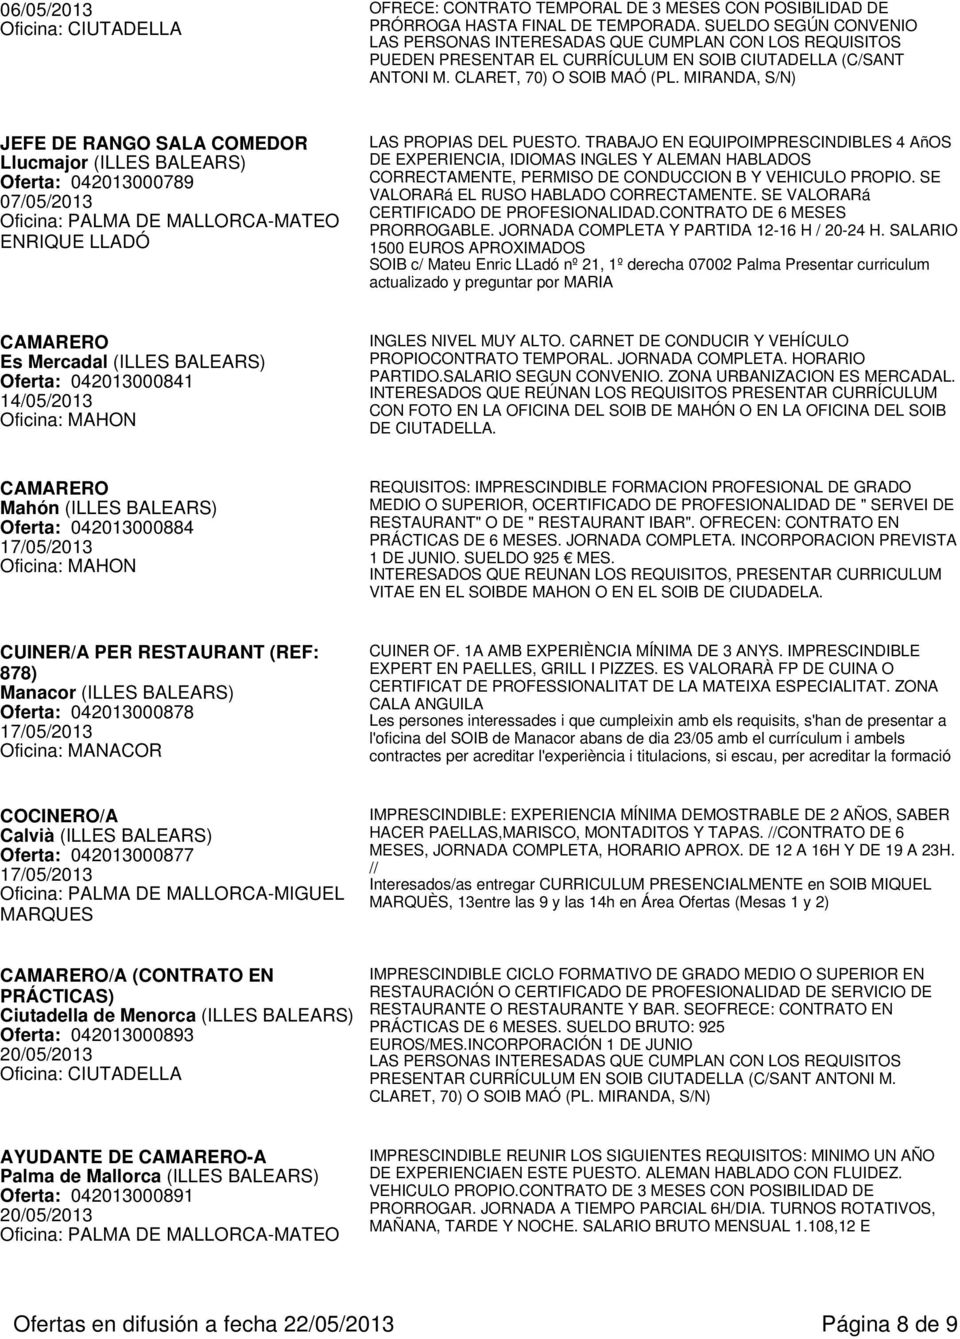 MIRANDA, S/N) JEFE DE RANGO SALA COMEDOR Llucmajor (ILLES BALEARS) Oferta: 042013000789 07/05/2013 LAS PROPIAS DEL PUESTO.